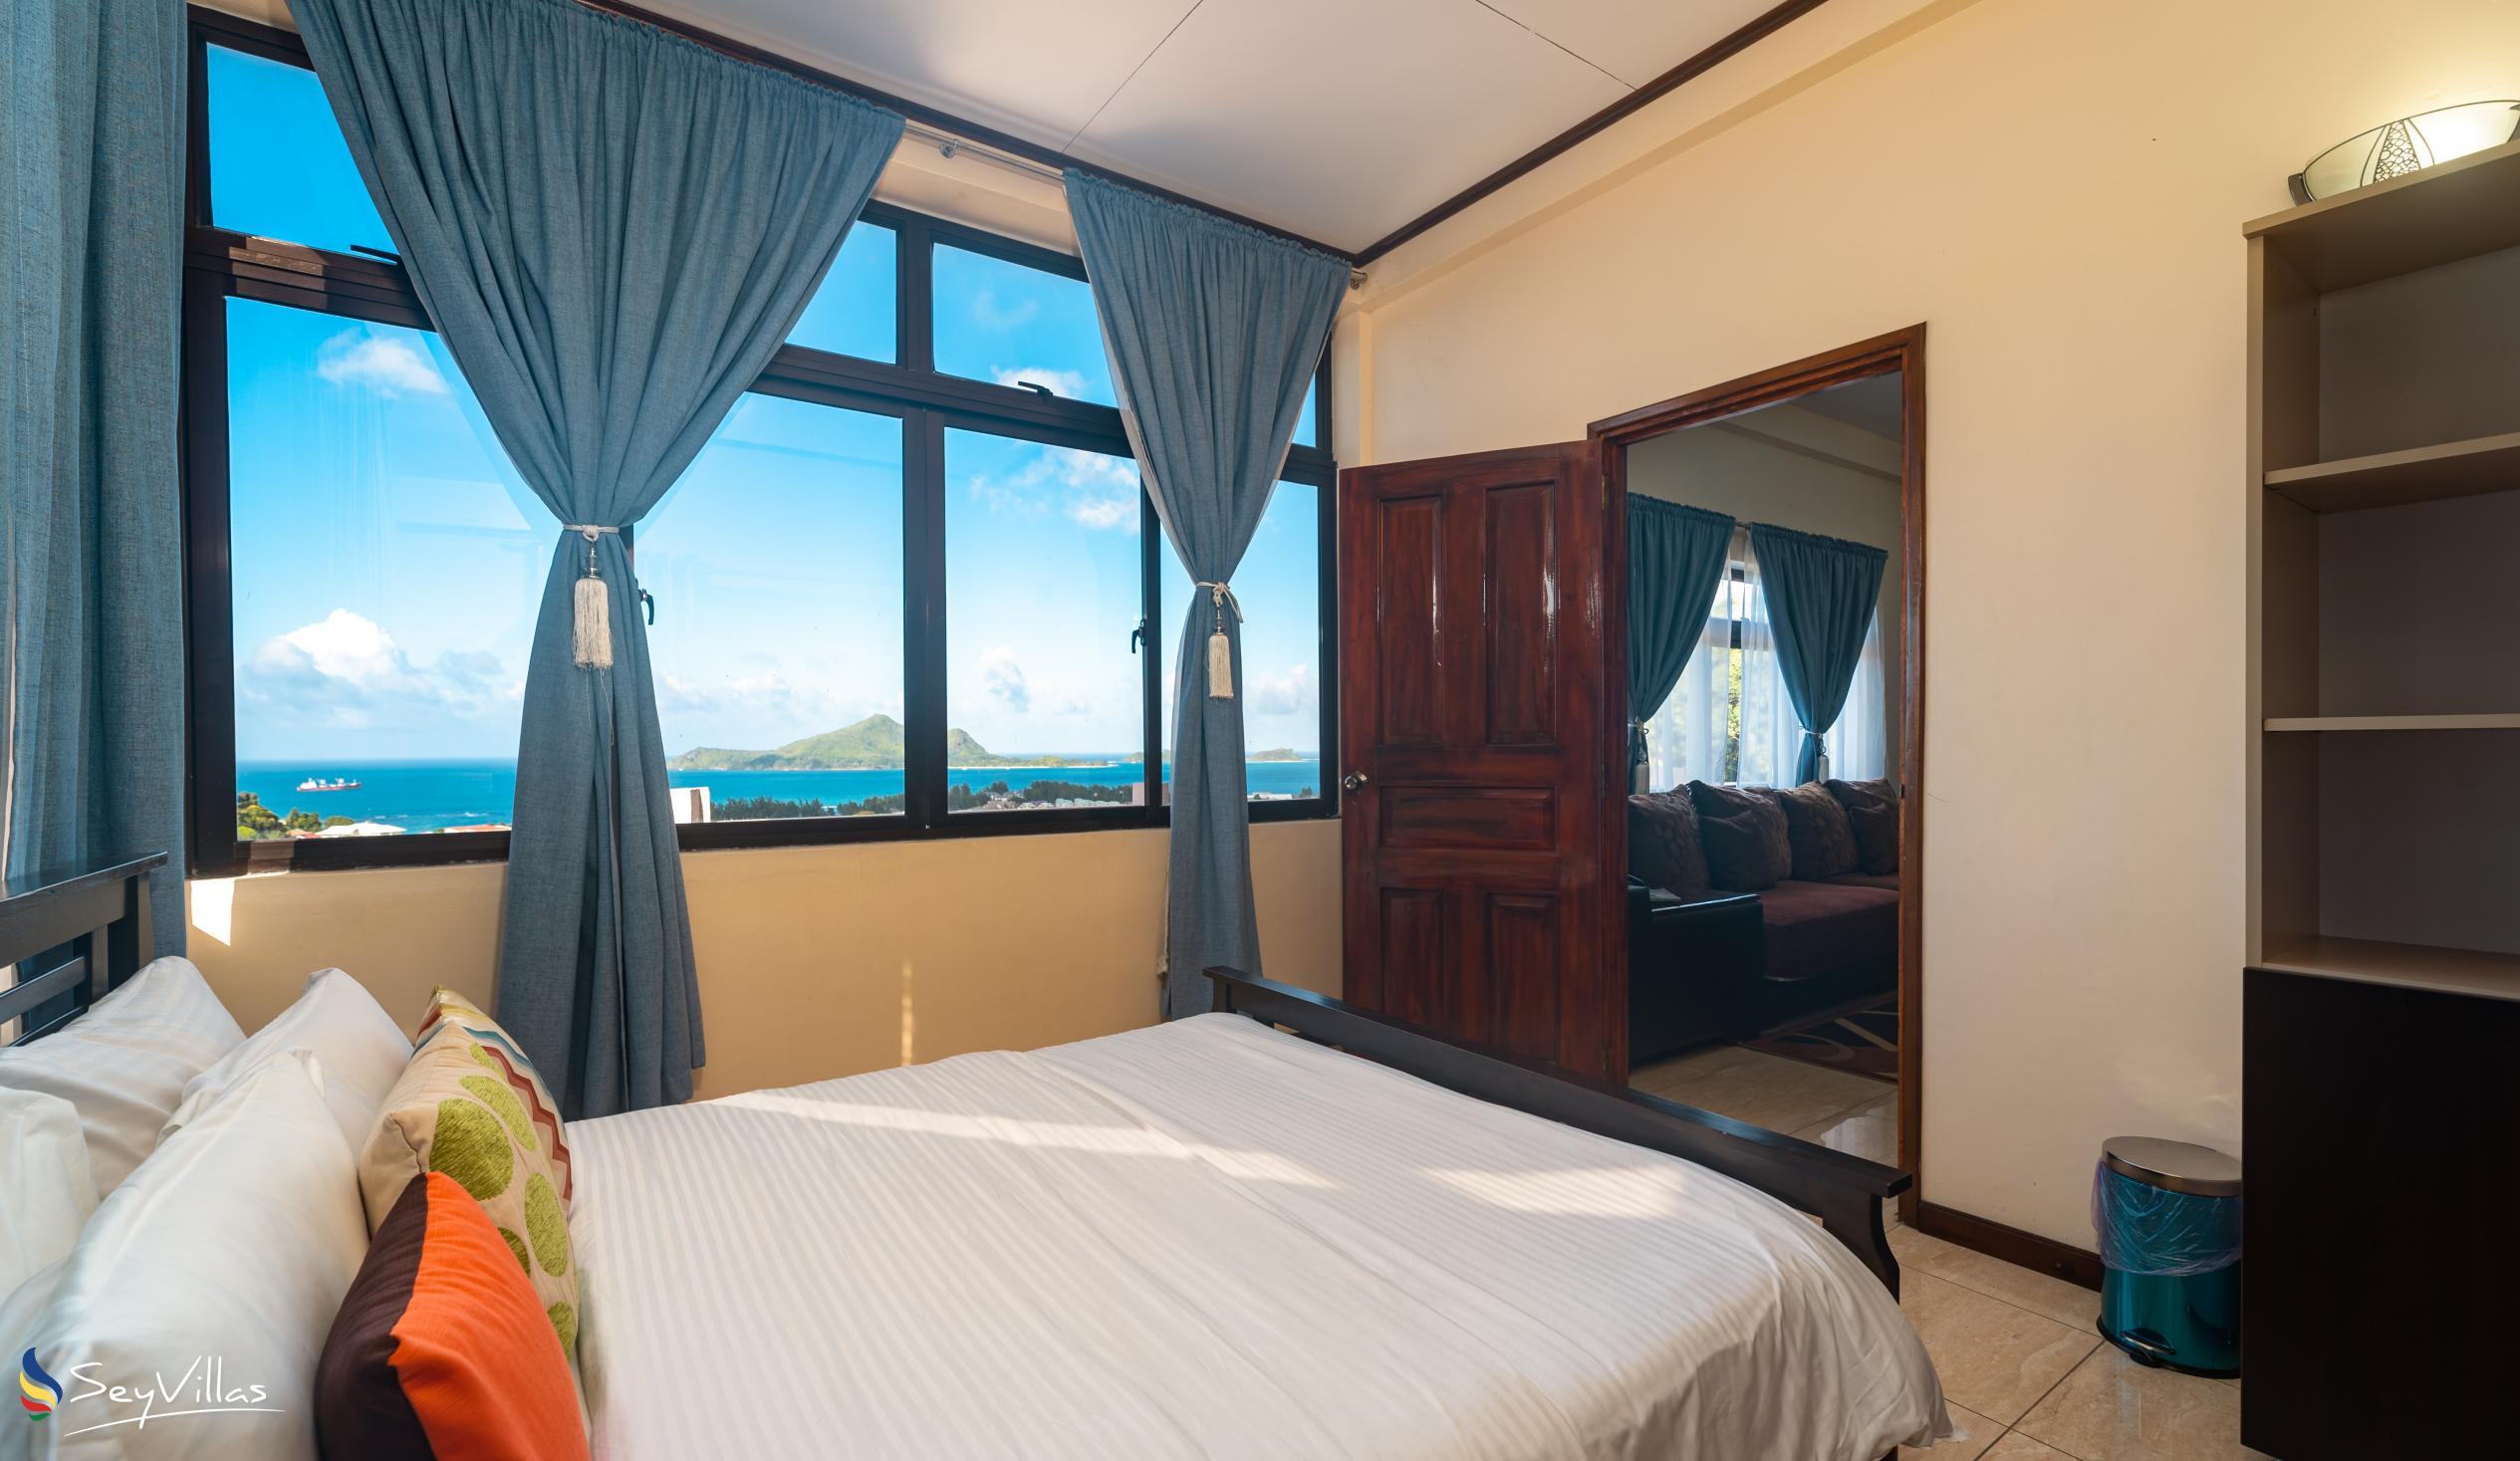 Foto 105: Maison L'Horizon - Appartamento con 3 camere Lorizon - Mahé (Seychelles)